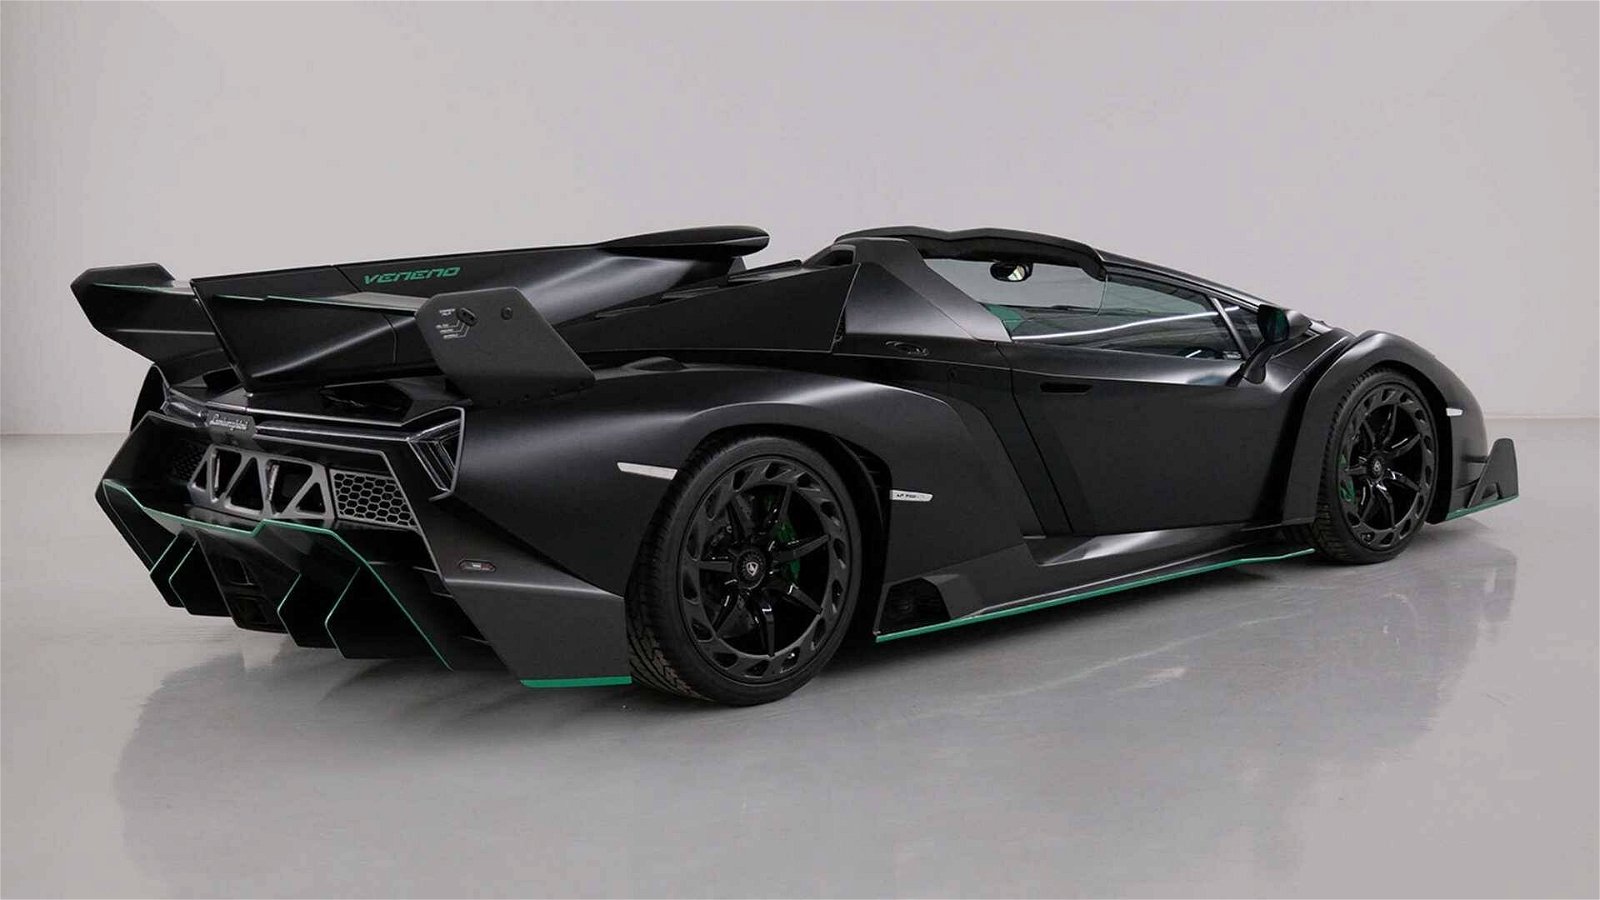 Immagine di Lamborghini Veneno Roadster, uno dei pochi esemplari andrà all'asta